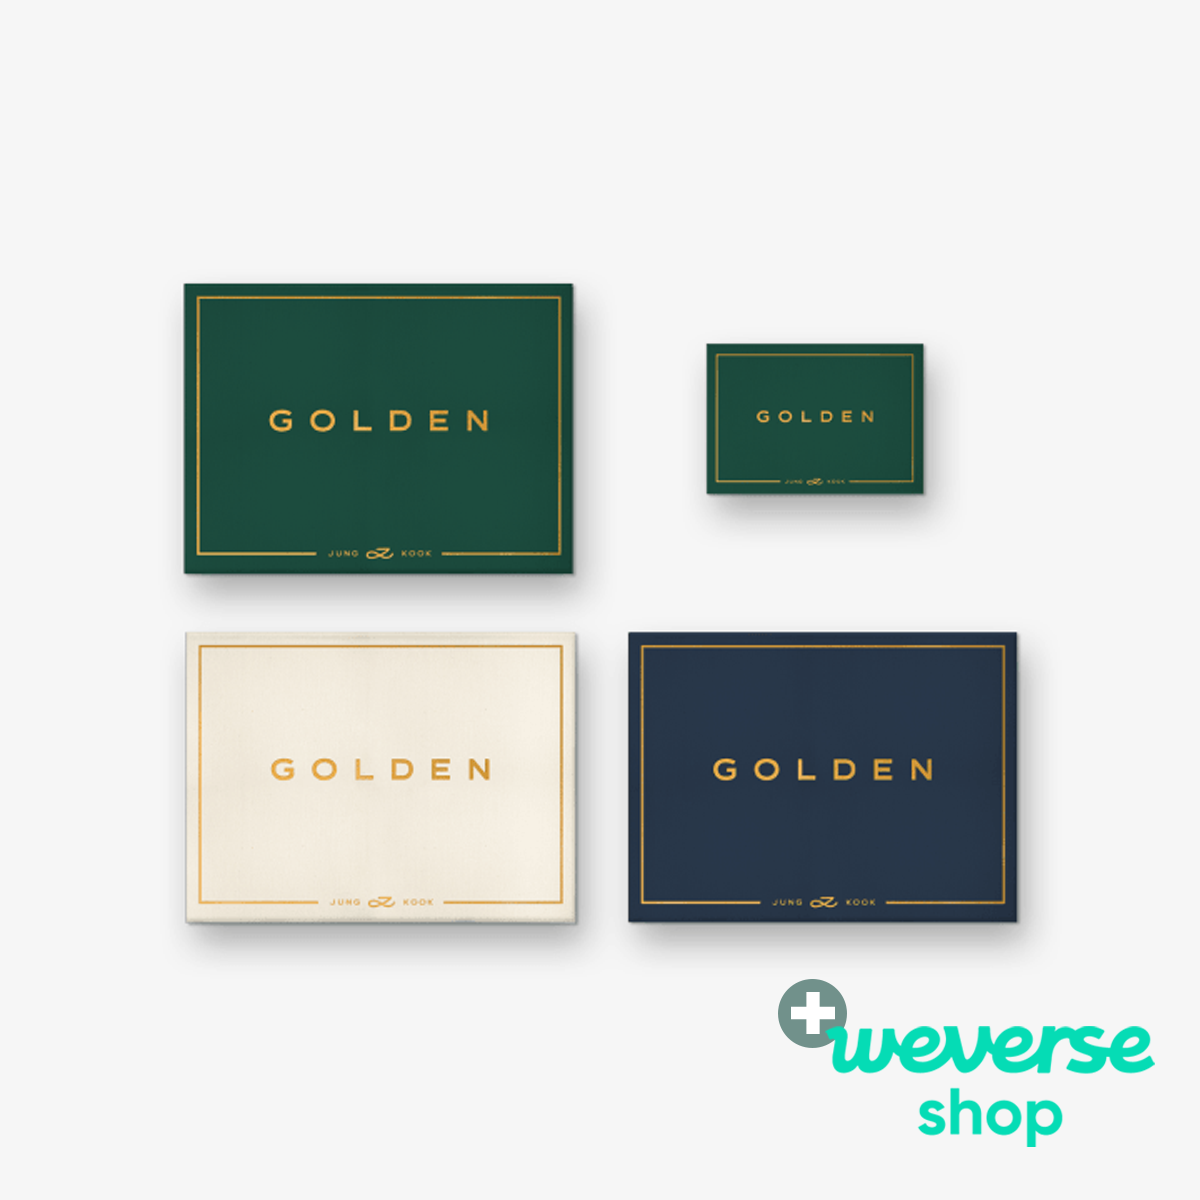 Jung Kook (BTS) - GOLDEN (FULL SET (Standard ver. 3EA + Weverse Albums ver.)) + Weverse Shop P.O.B [PRE-ORDER]